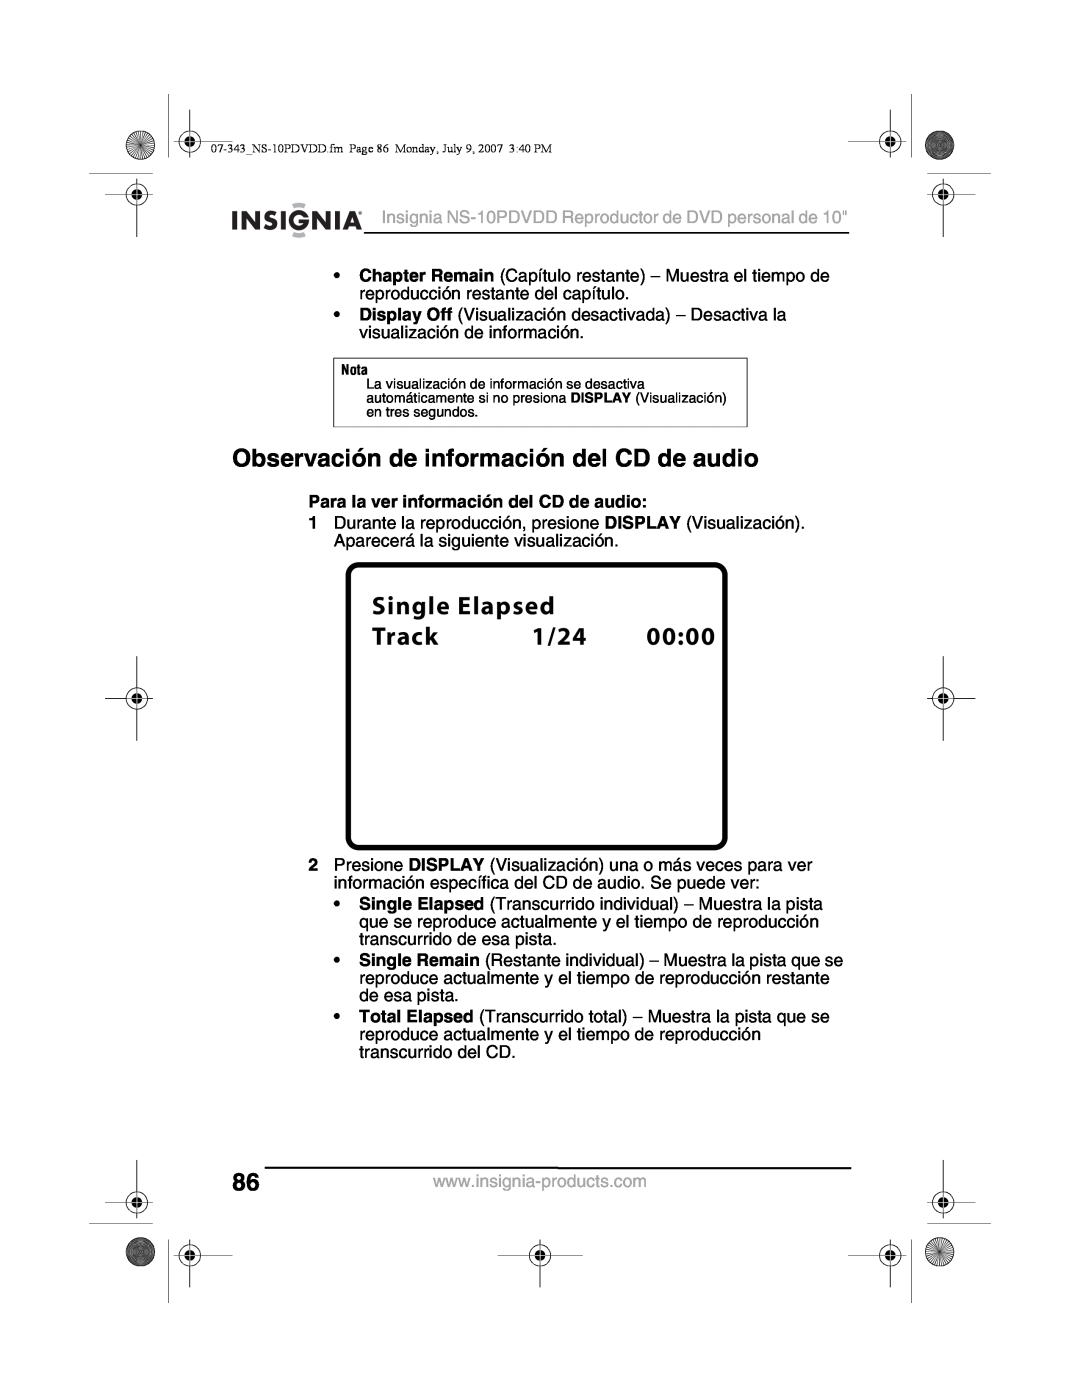 Insignia NS-10PDVDD manual Observación de información del CD de audio, Para la ver información del CD de audio 